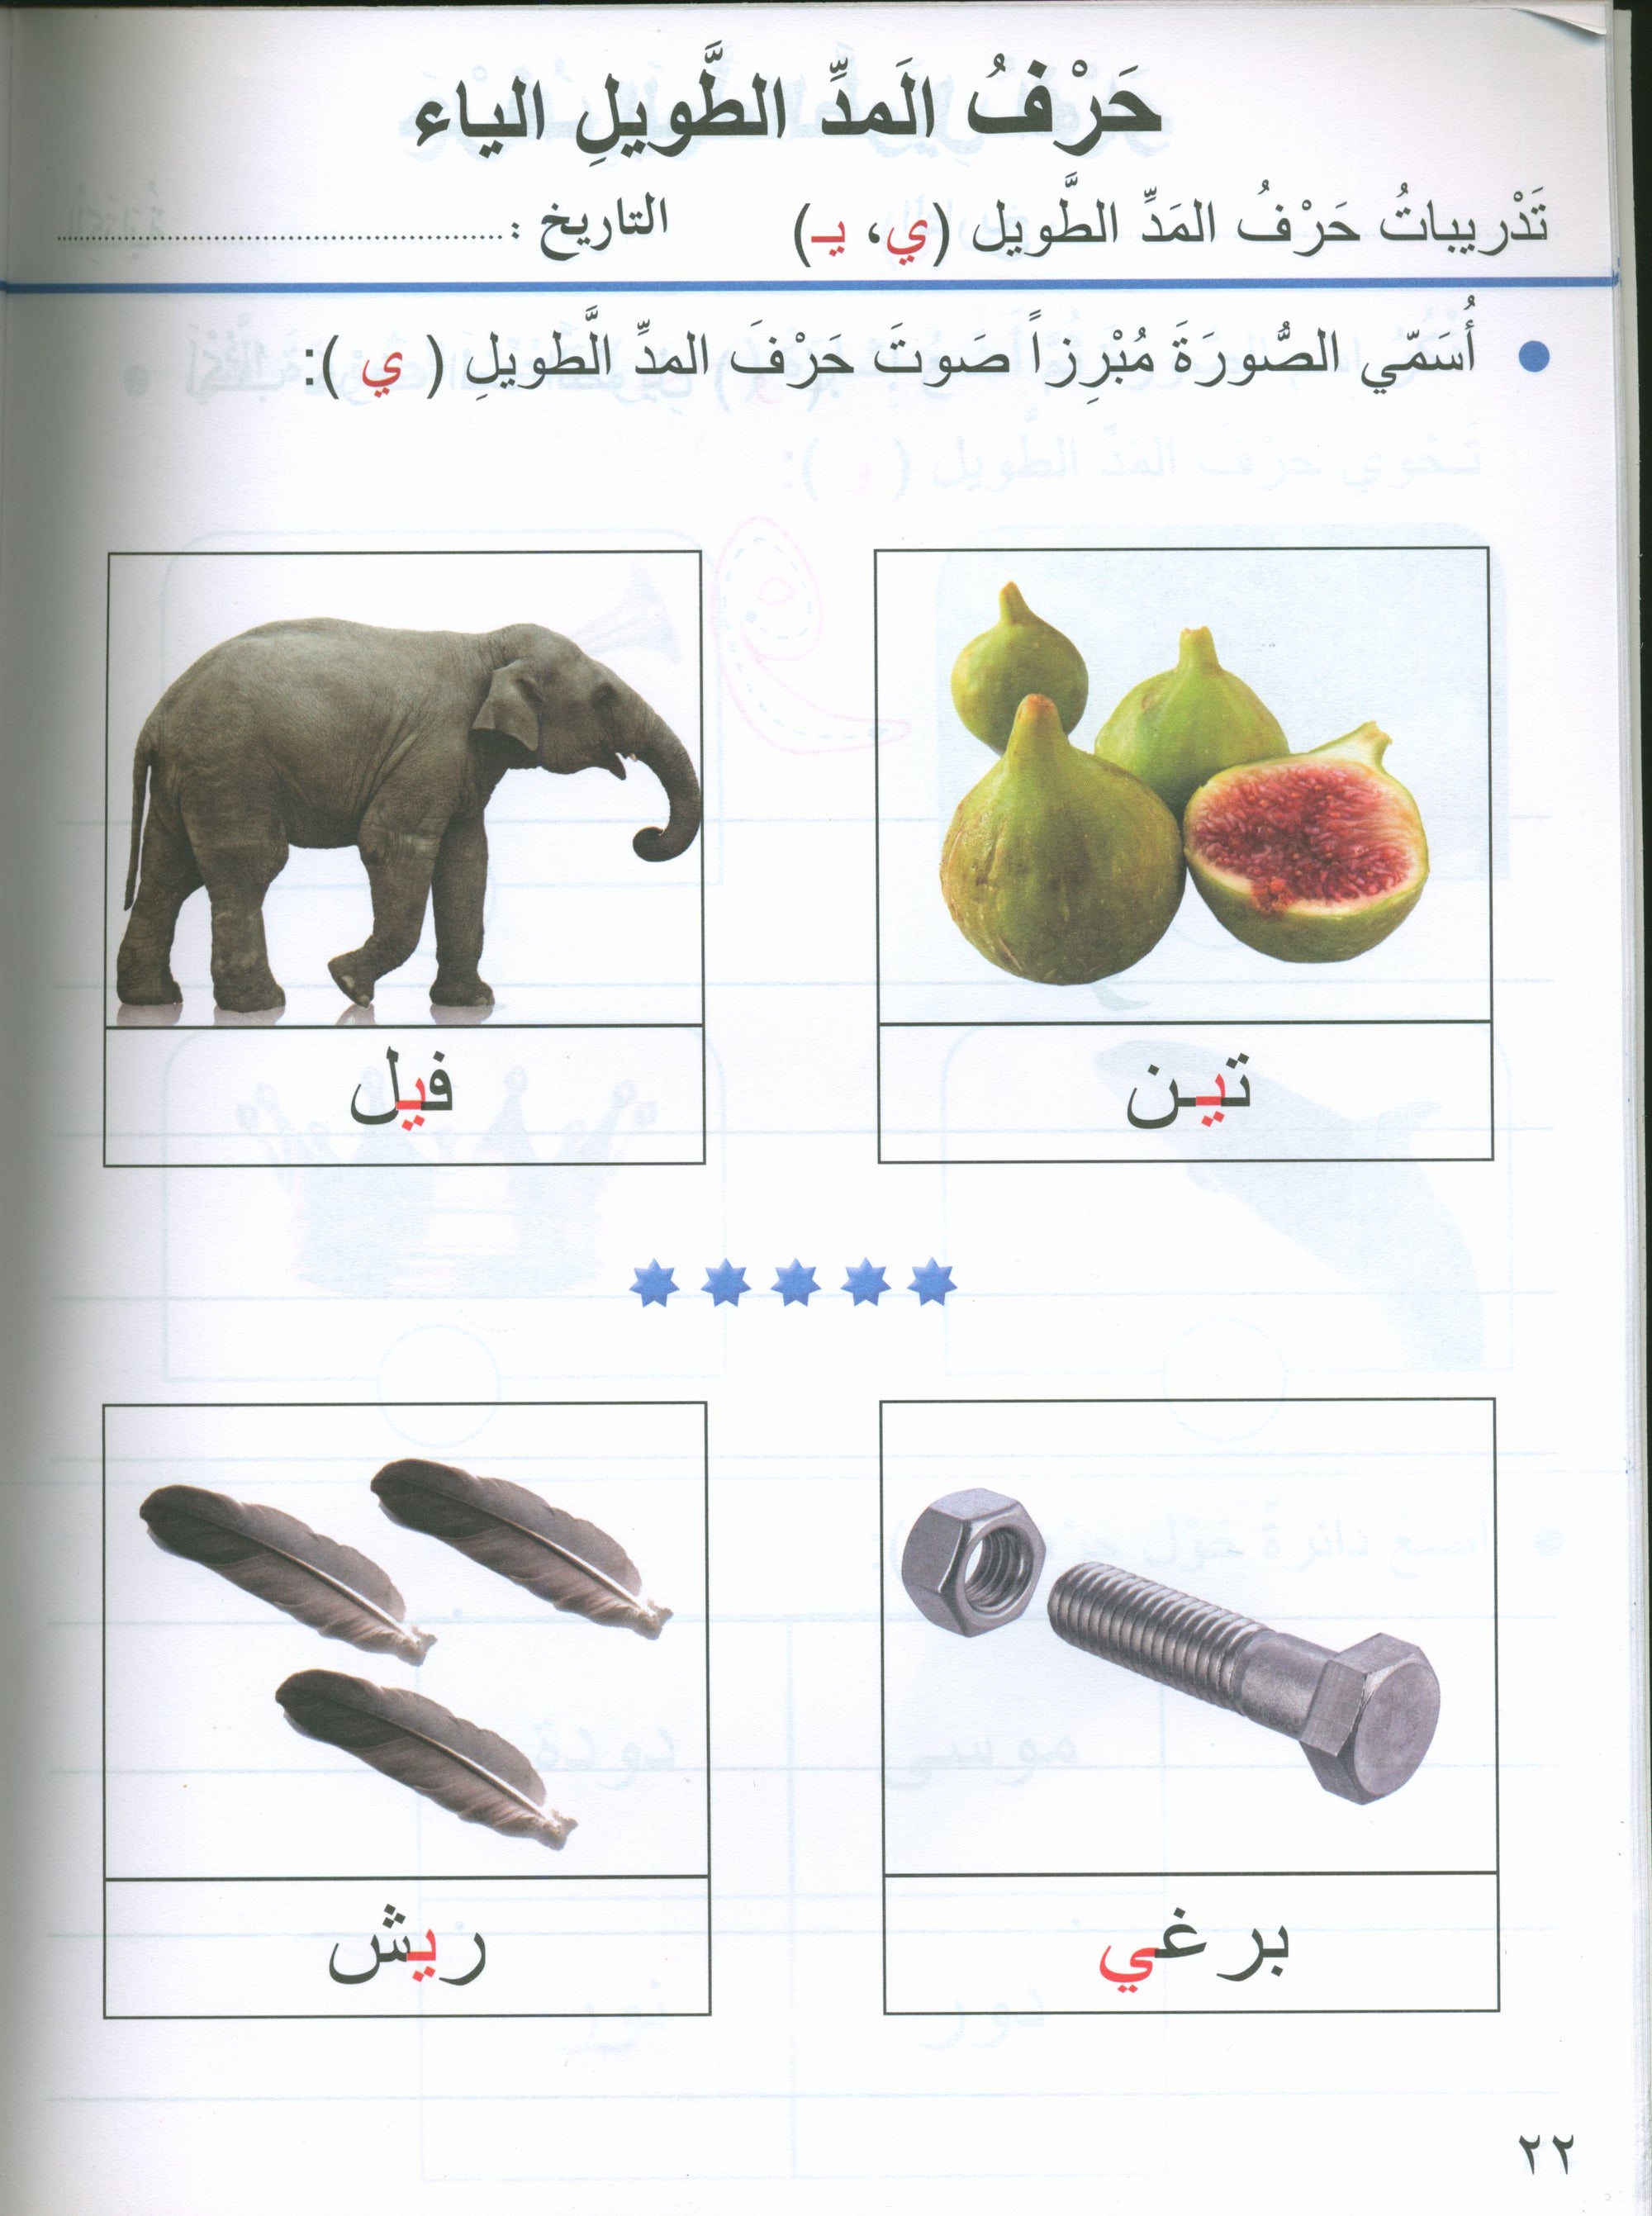 Our Arabic Language Textbook KG 1 لغتنا العربية